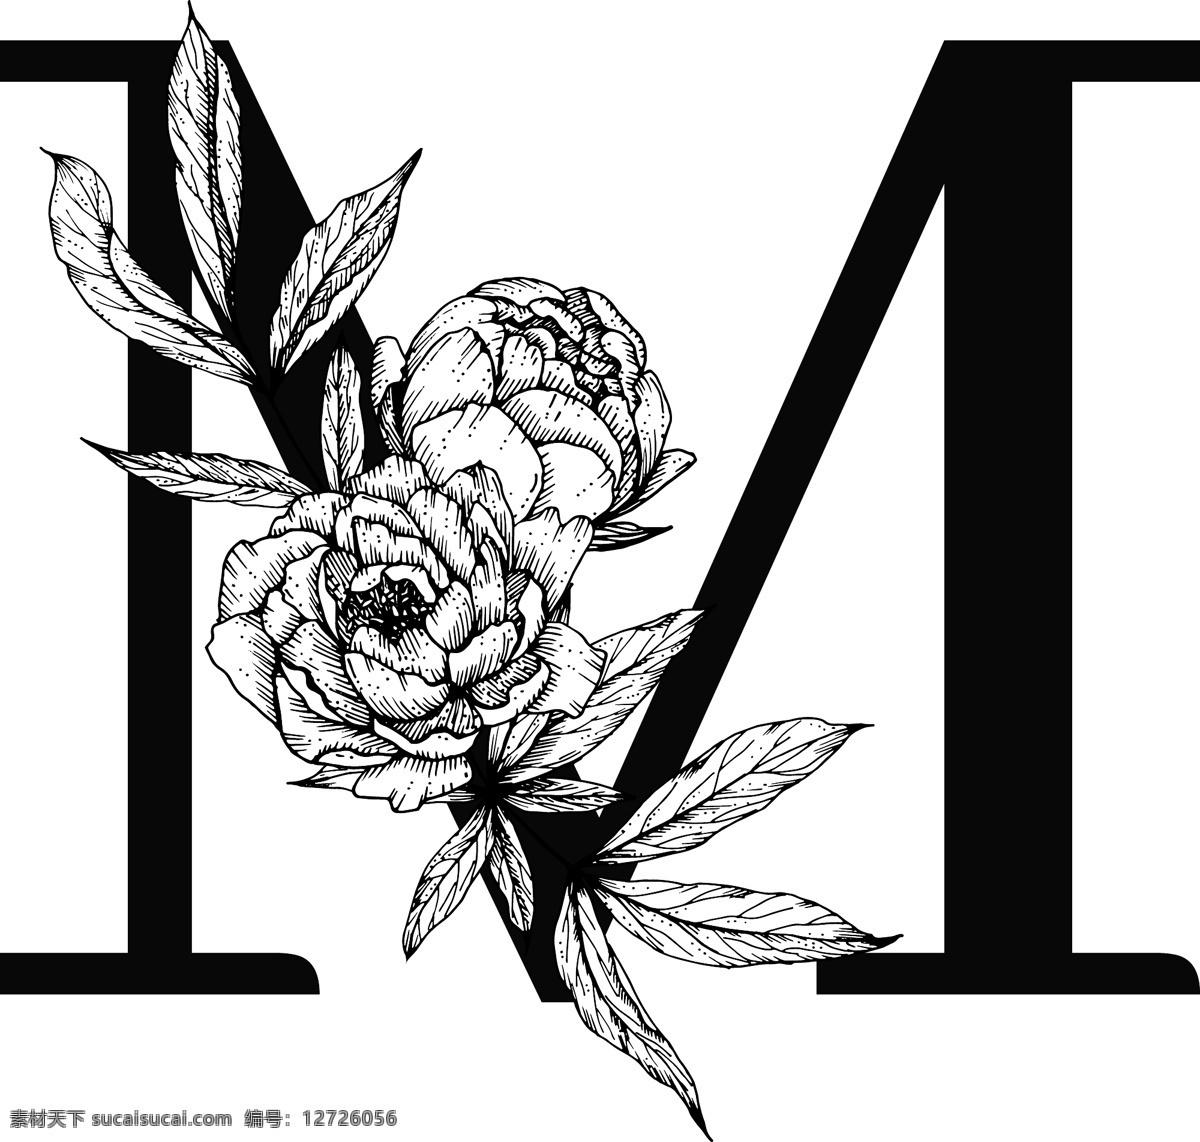 花卉装饰字母 字母m 黑白线描花朵 英文 字母 字体 花朵 鲜花 黑白 线描 素描 白描 创意设计 设计素材 矢量图 矢量素材 文化艺术 矢量 传统文化